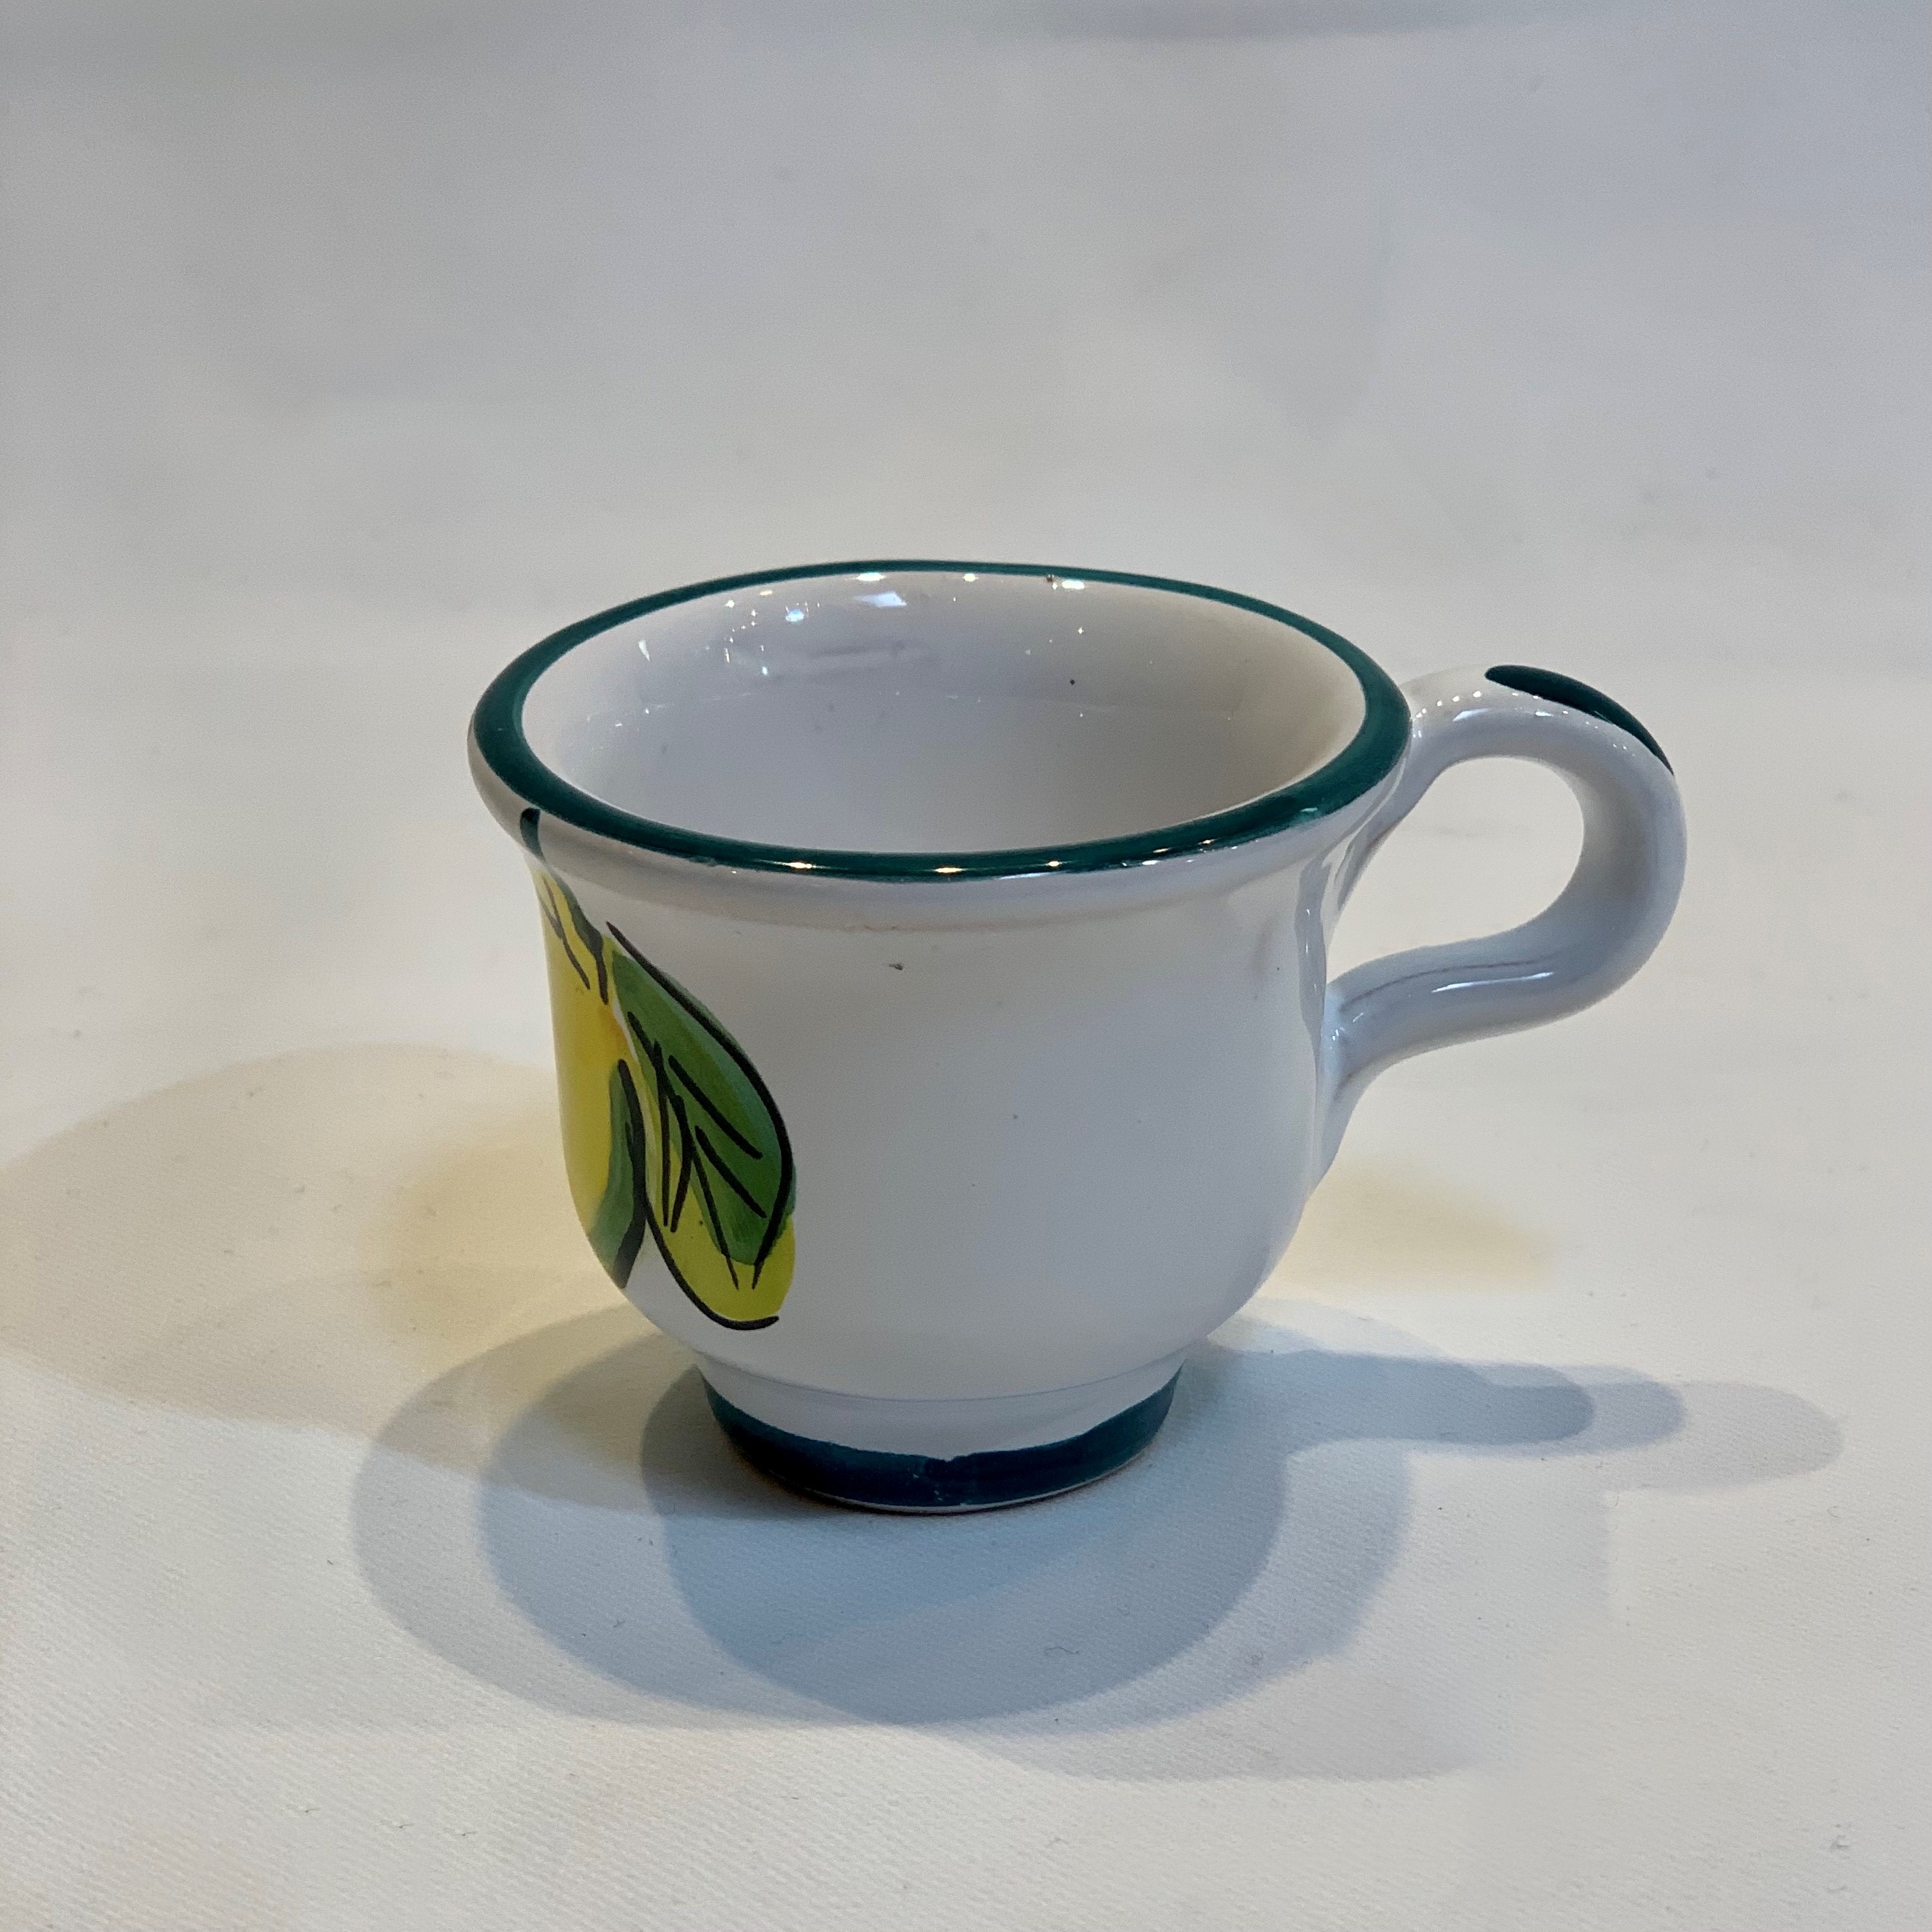 https://www.italianpottery.com/wp-content/uploads/2021/05/lemon-espresso-cups-3.jpg